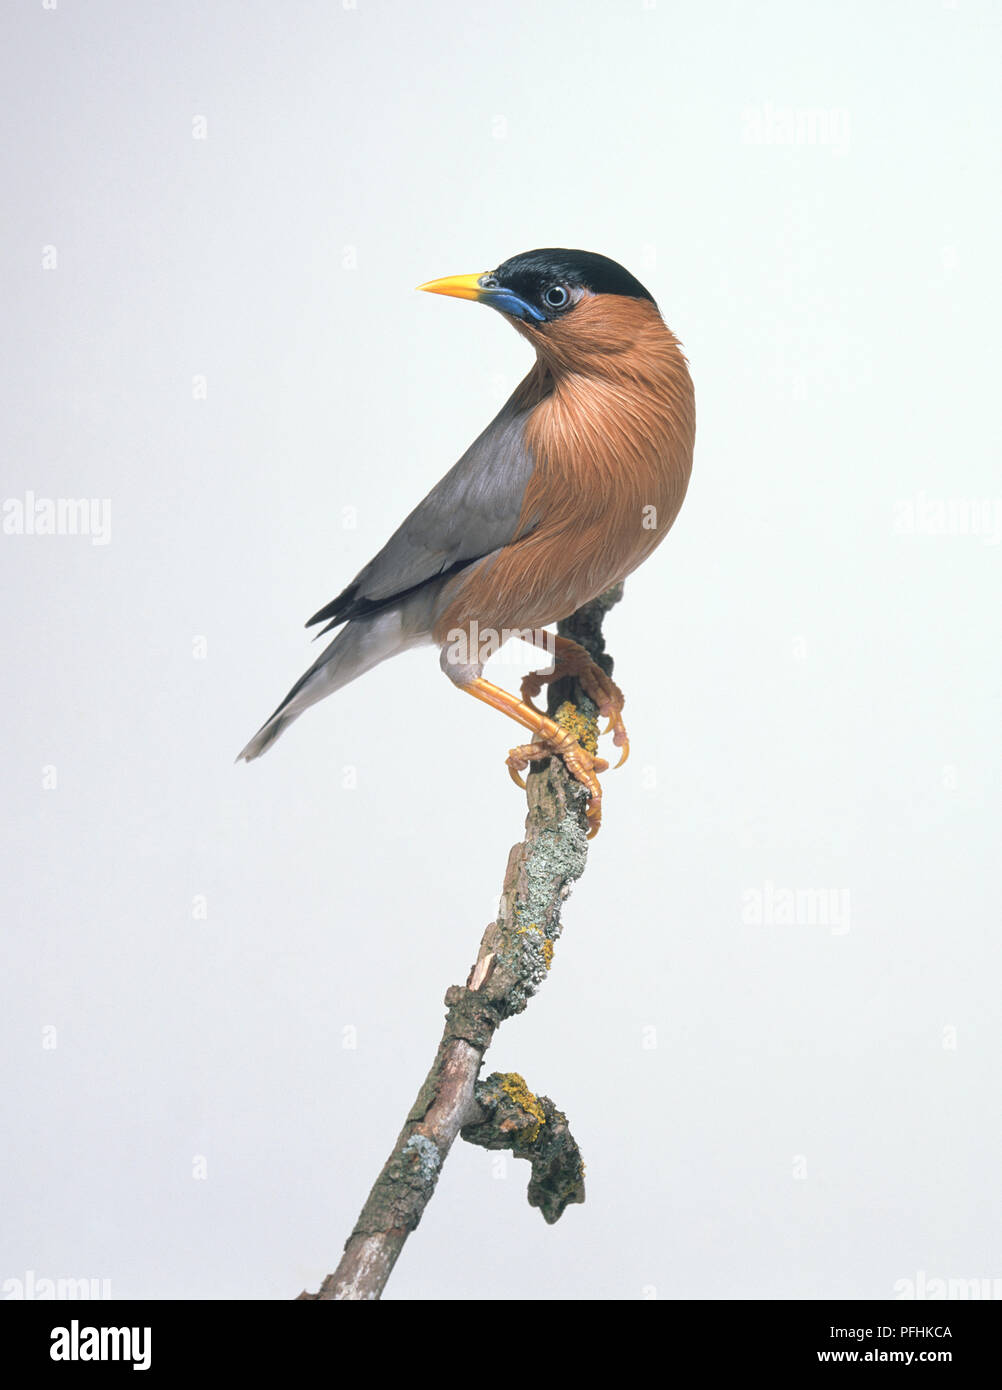 A testa nera starling (Sturnus pagodarum) appollaiate su un ramo, guardando lontano Foto Stock